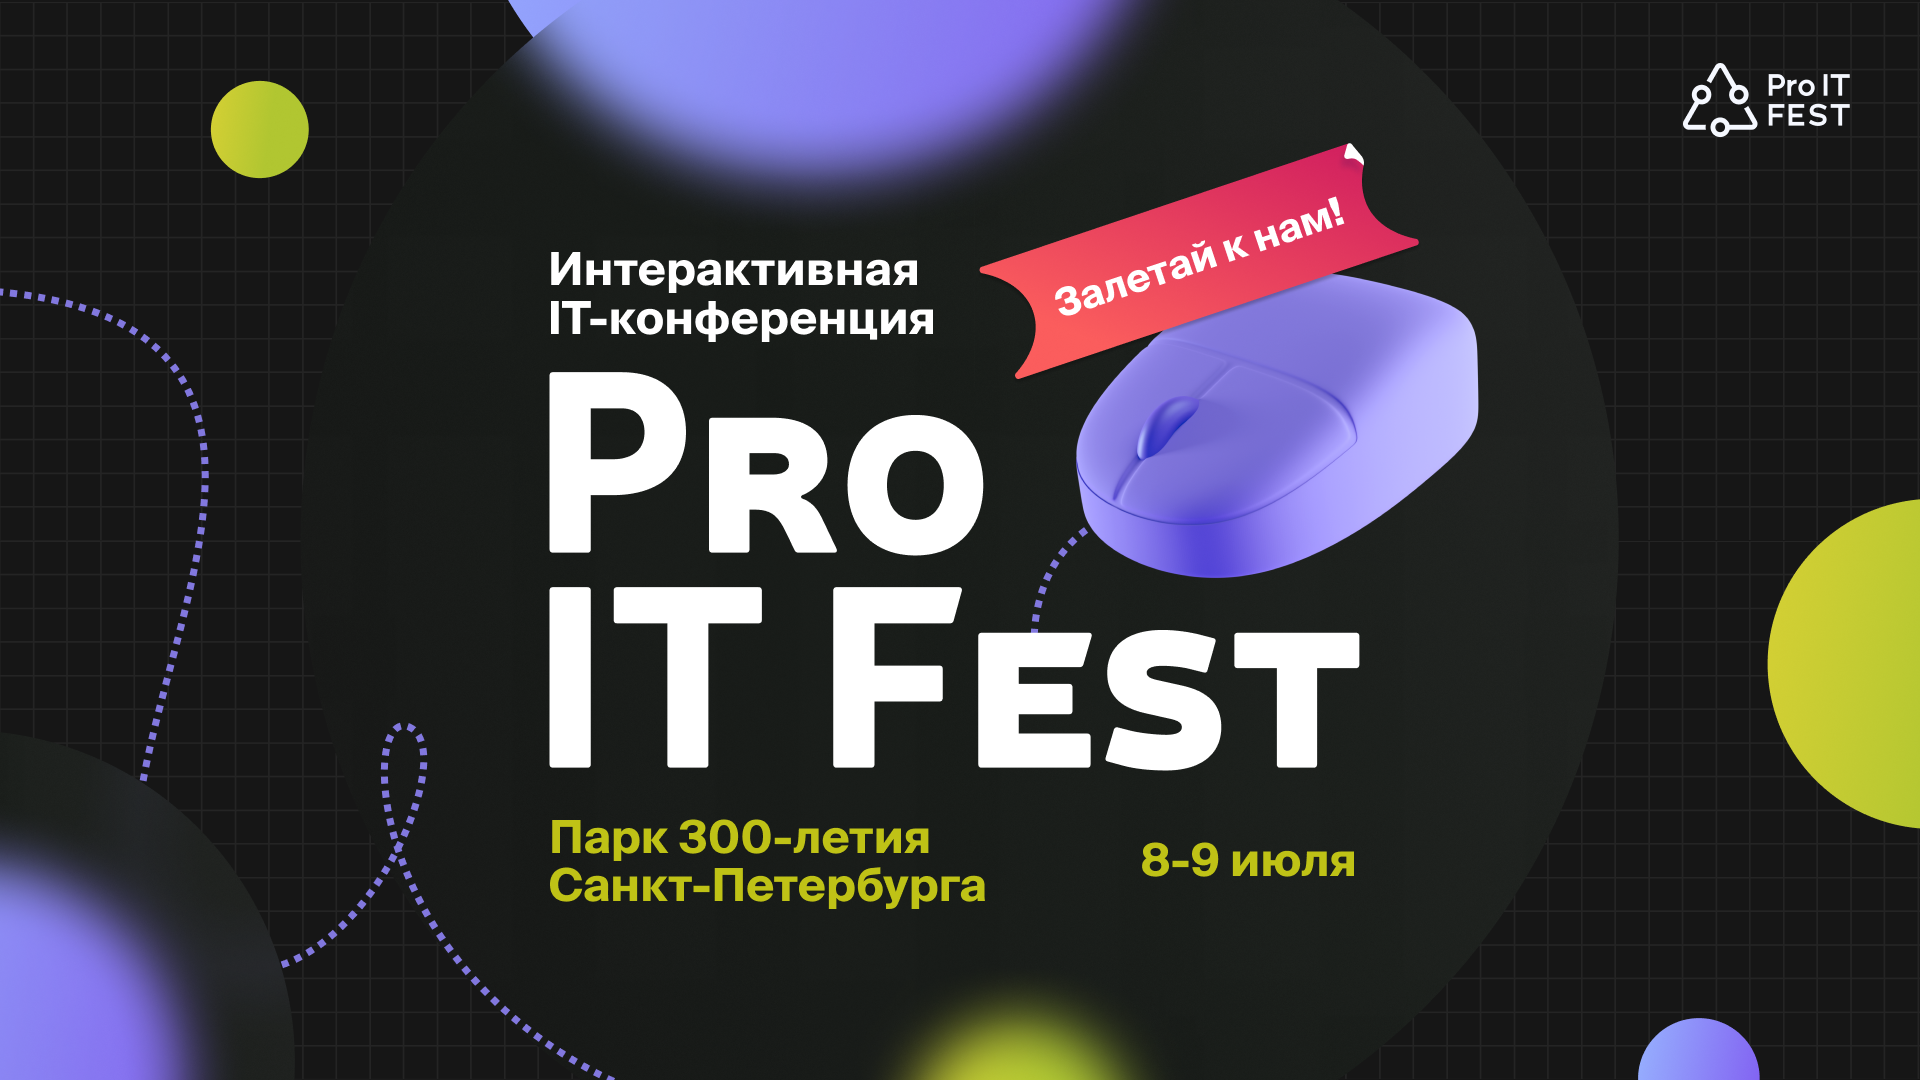 ProIT Fest